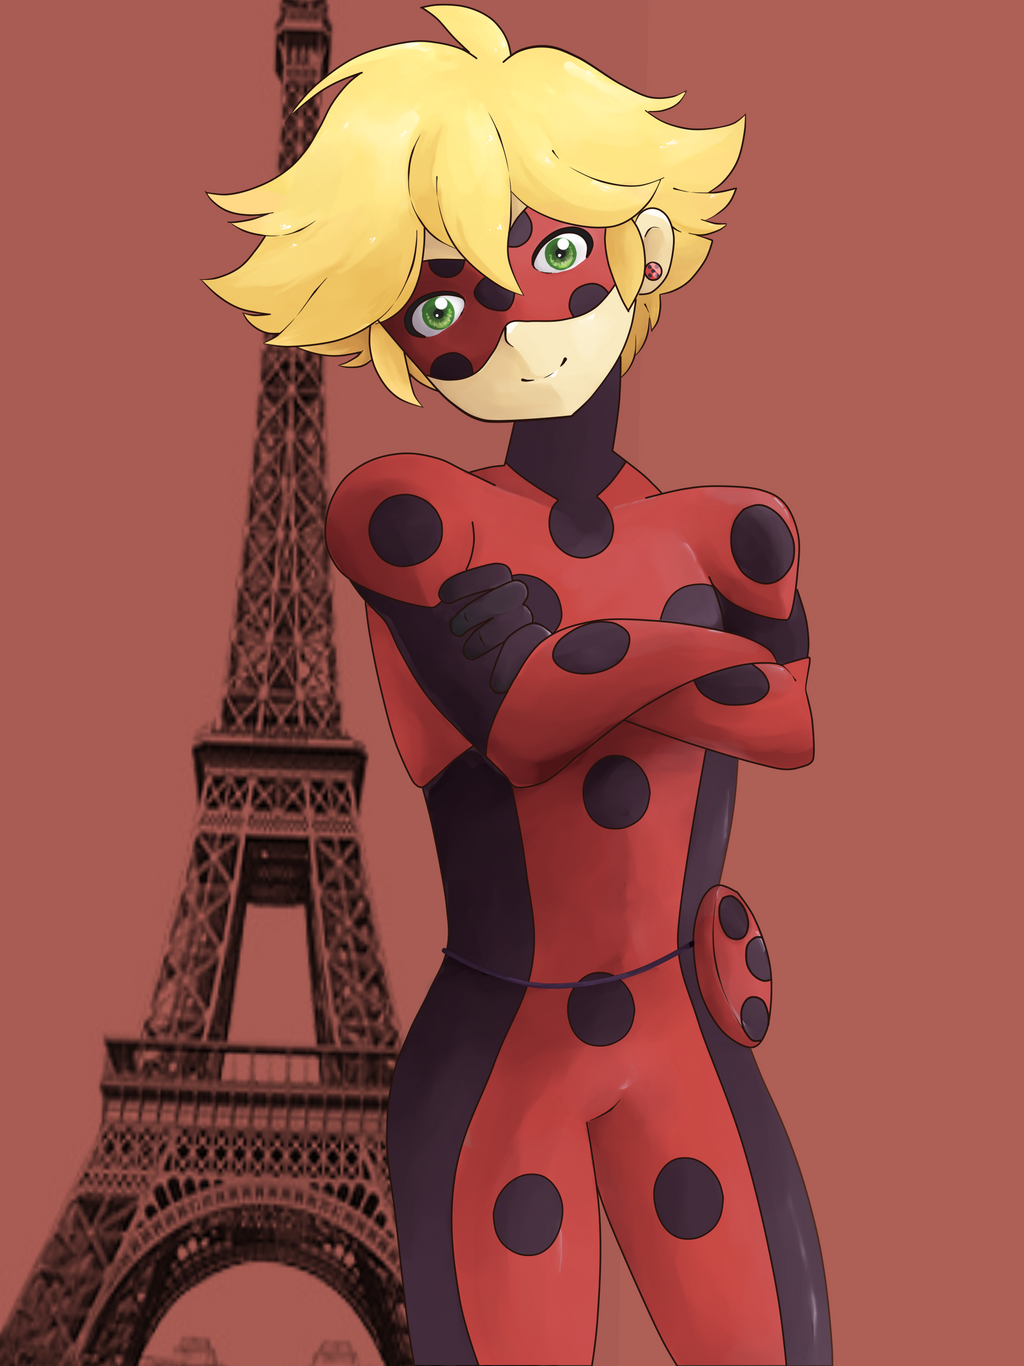 Miraculous Ladybug: Adrien (Ladybug) by Alexwhite2001 on DeviantArt